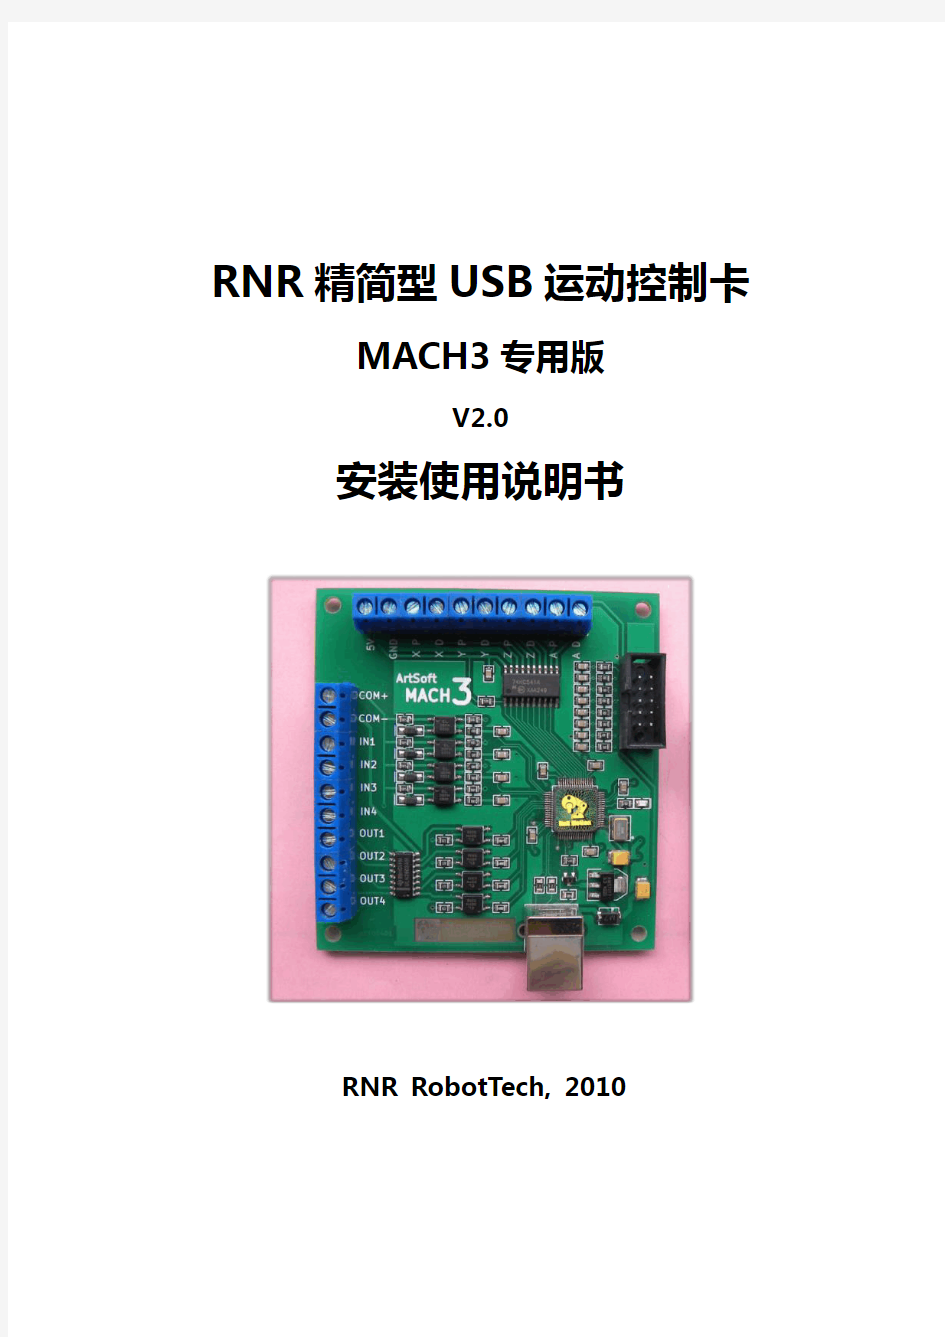 RNR精简型USB运动控制卡使用说明